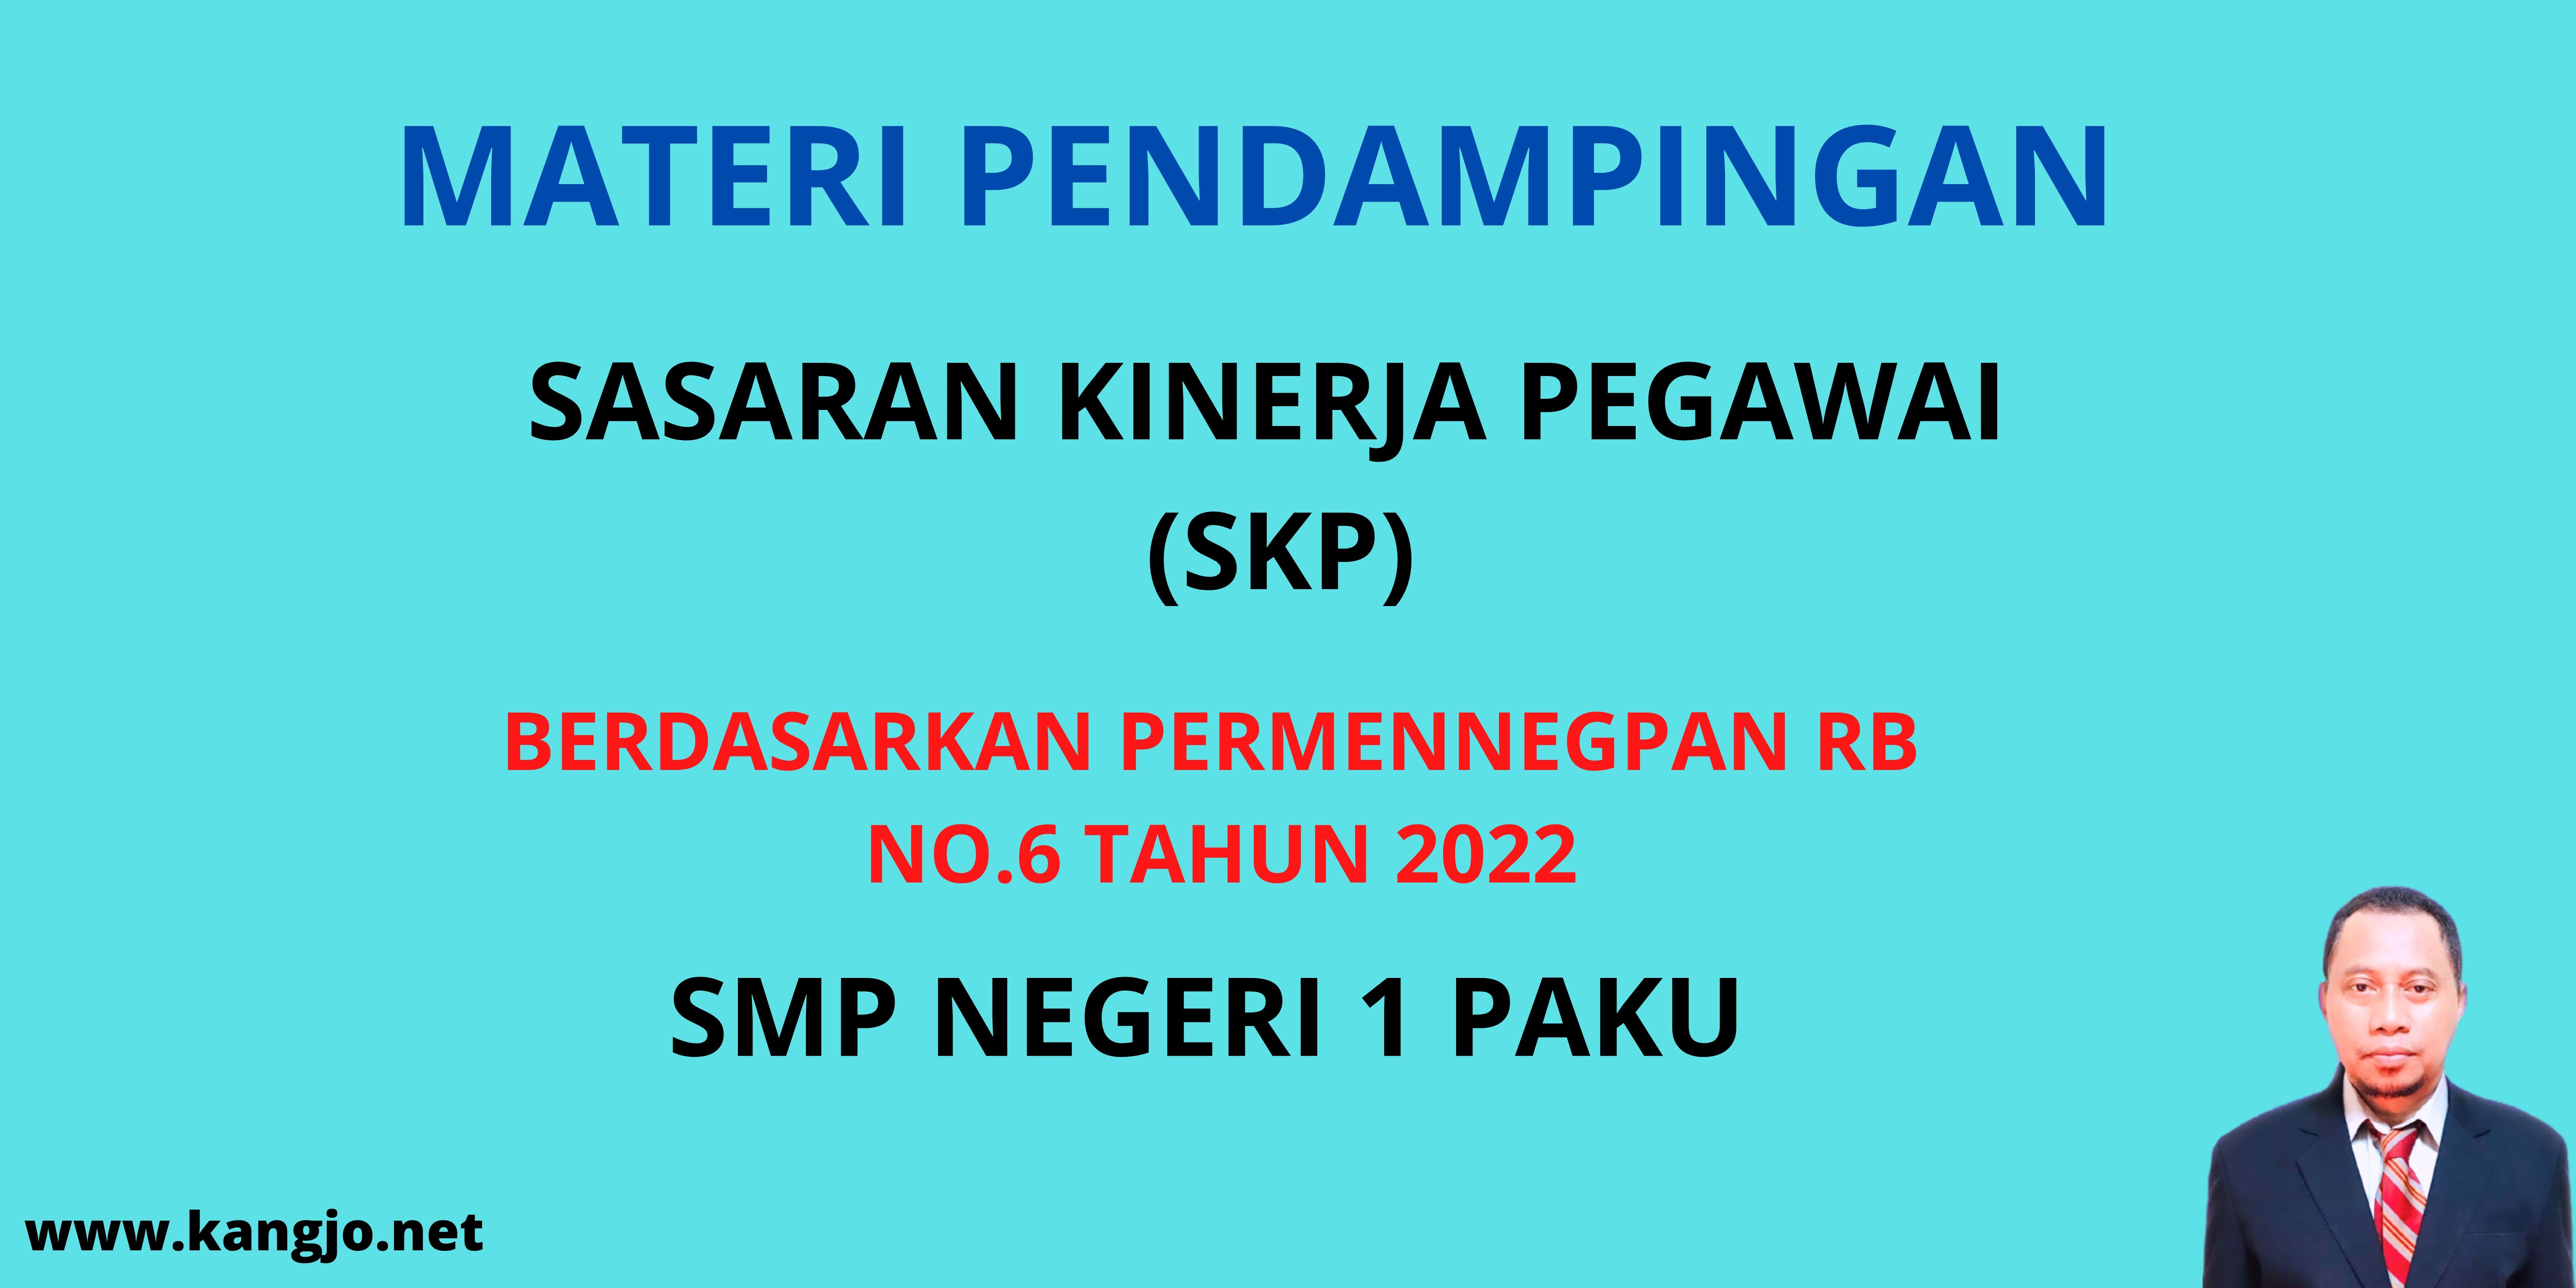 SKP_SMPN_1_PAKU.jpg